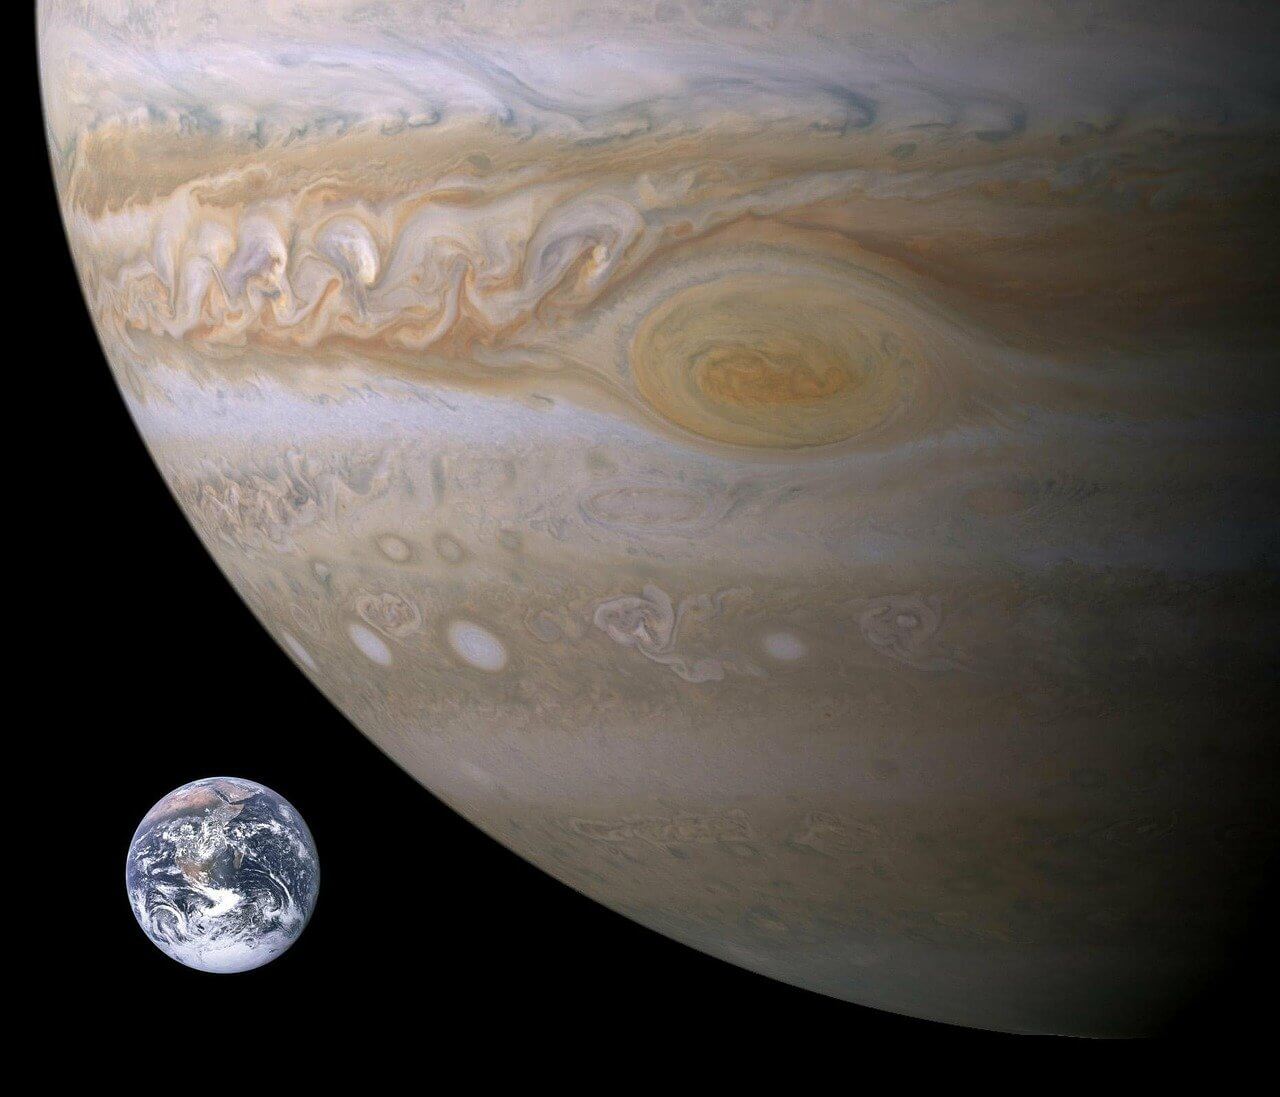 목성과 지구의 크기를 비교한 사진